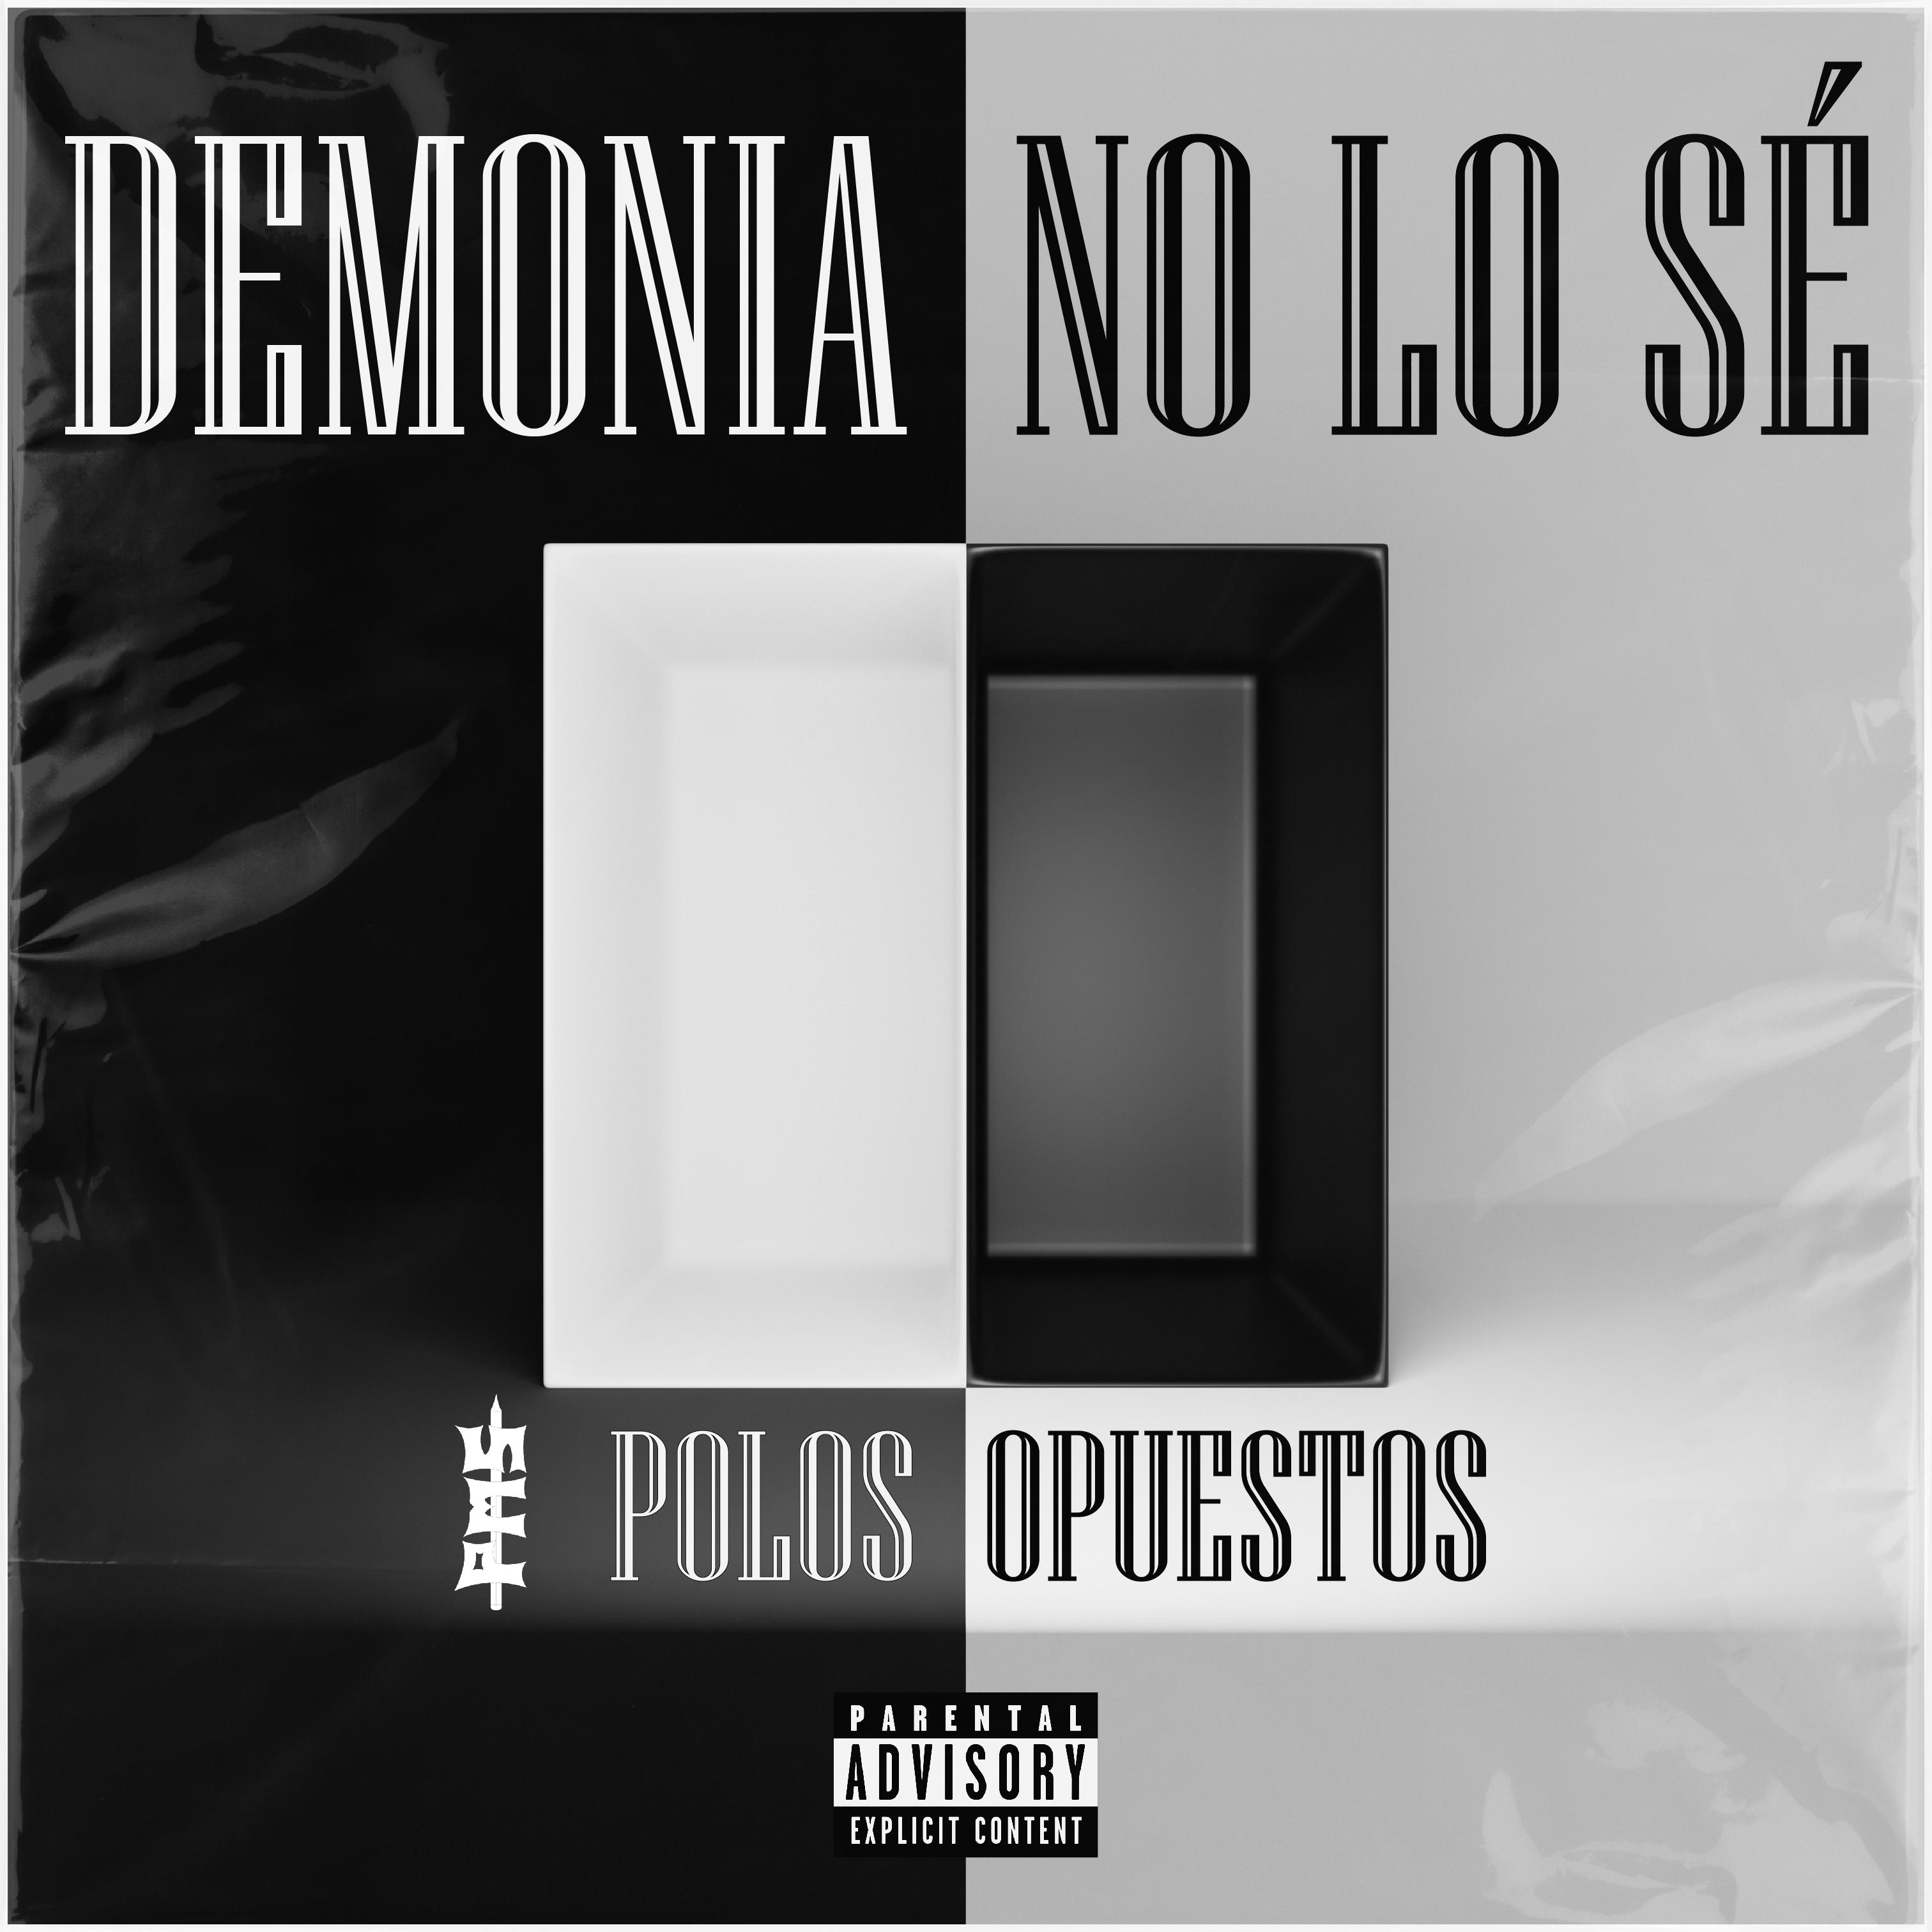 Постер альбома Polos Opuestos